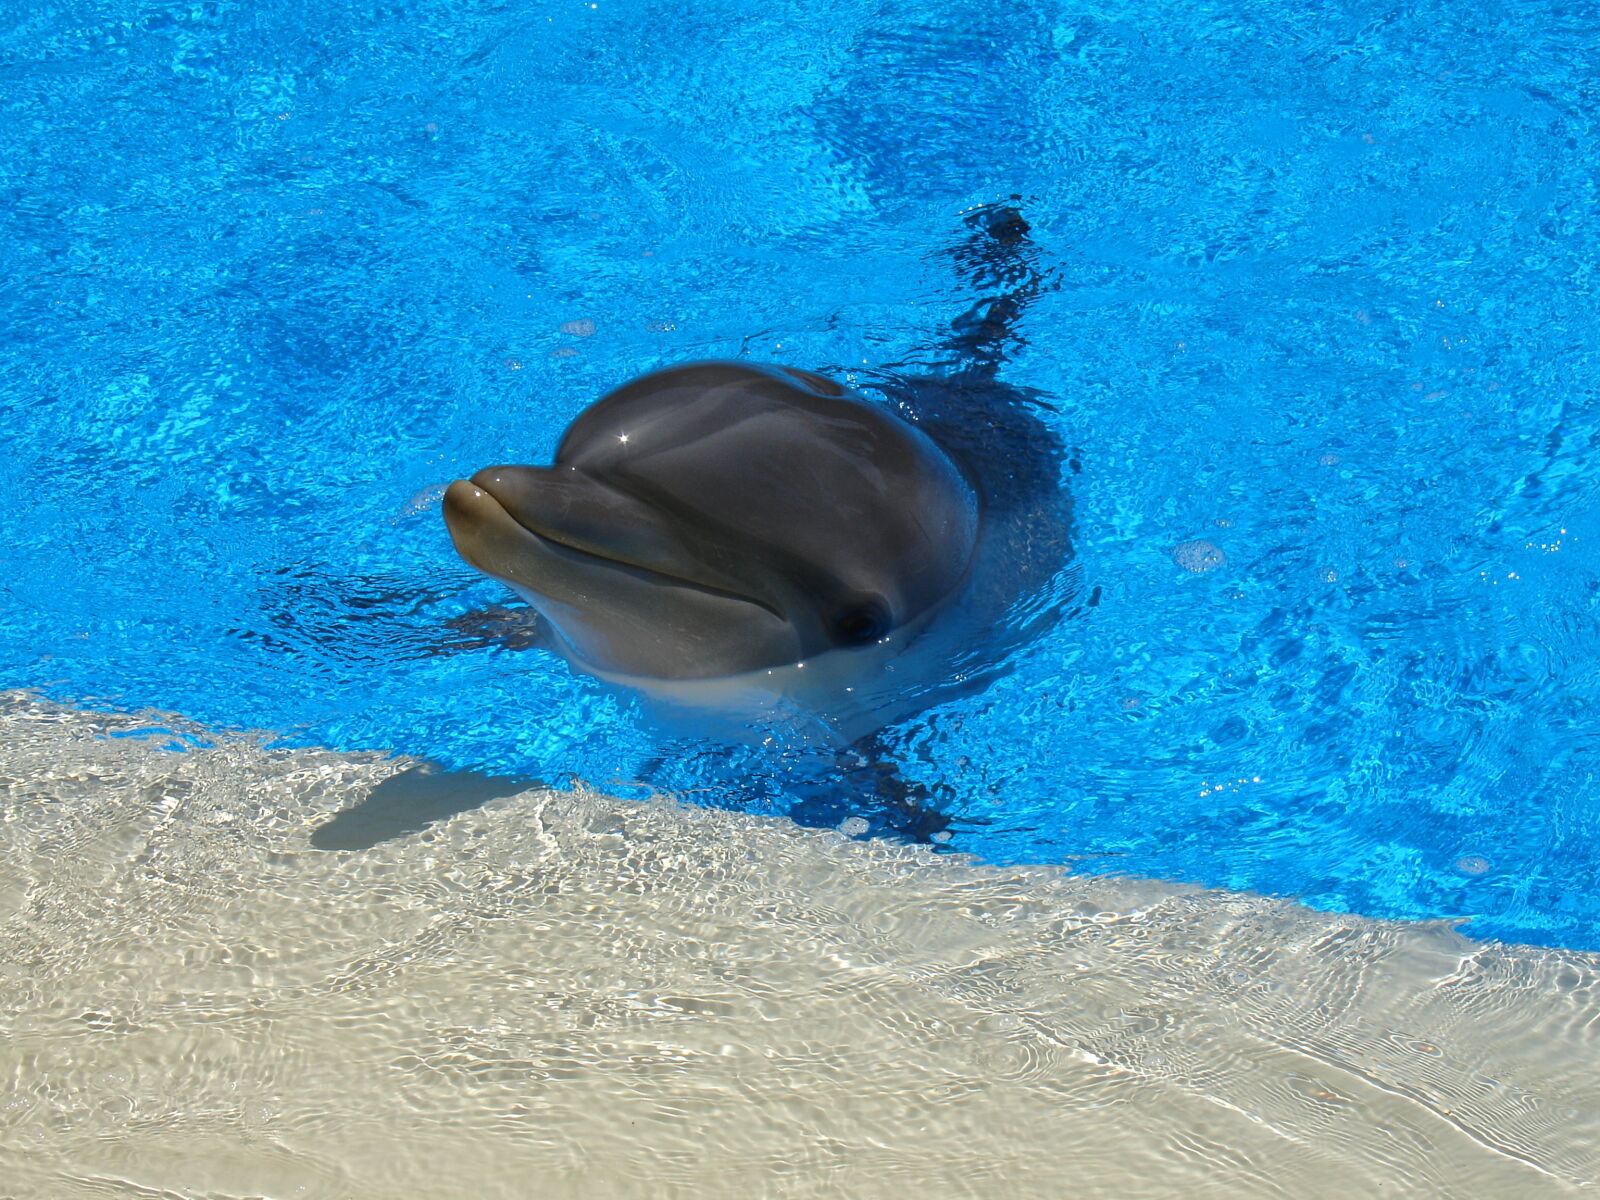 Sony DSC-V3 sample photo. Dolphin, mammal, water photography